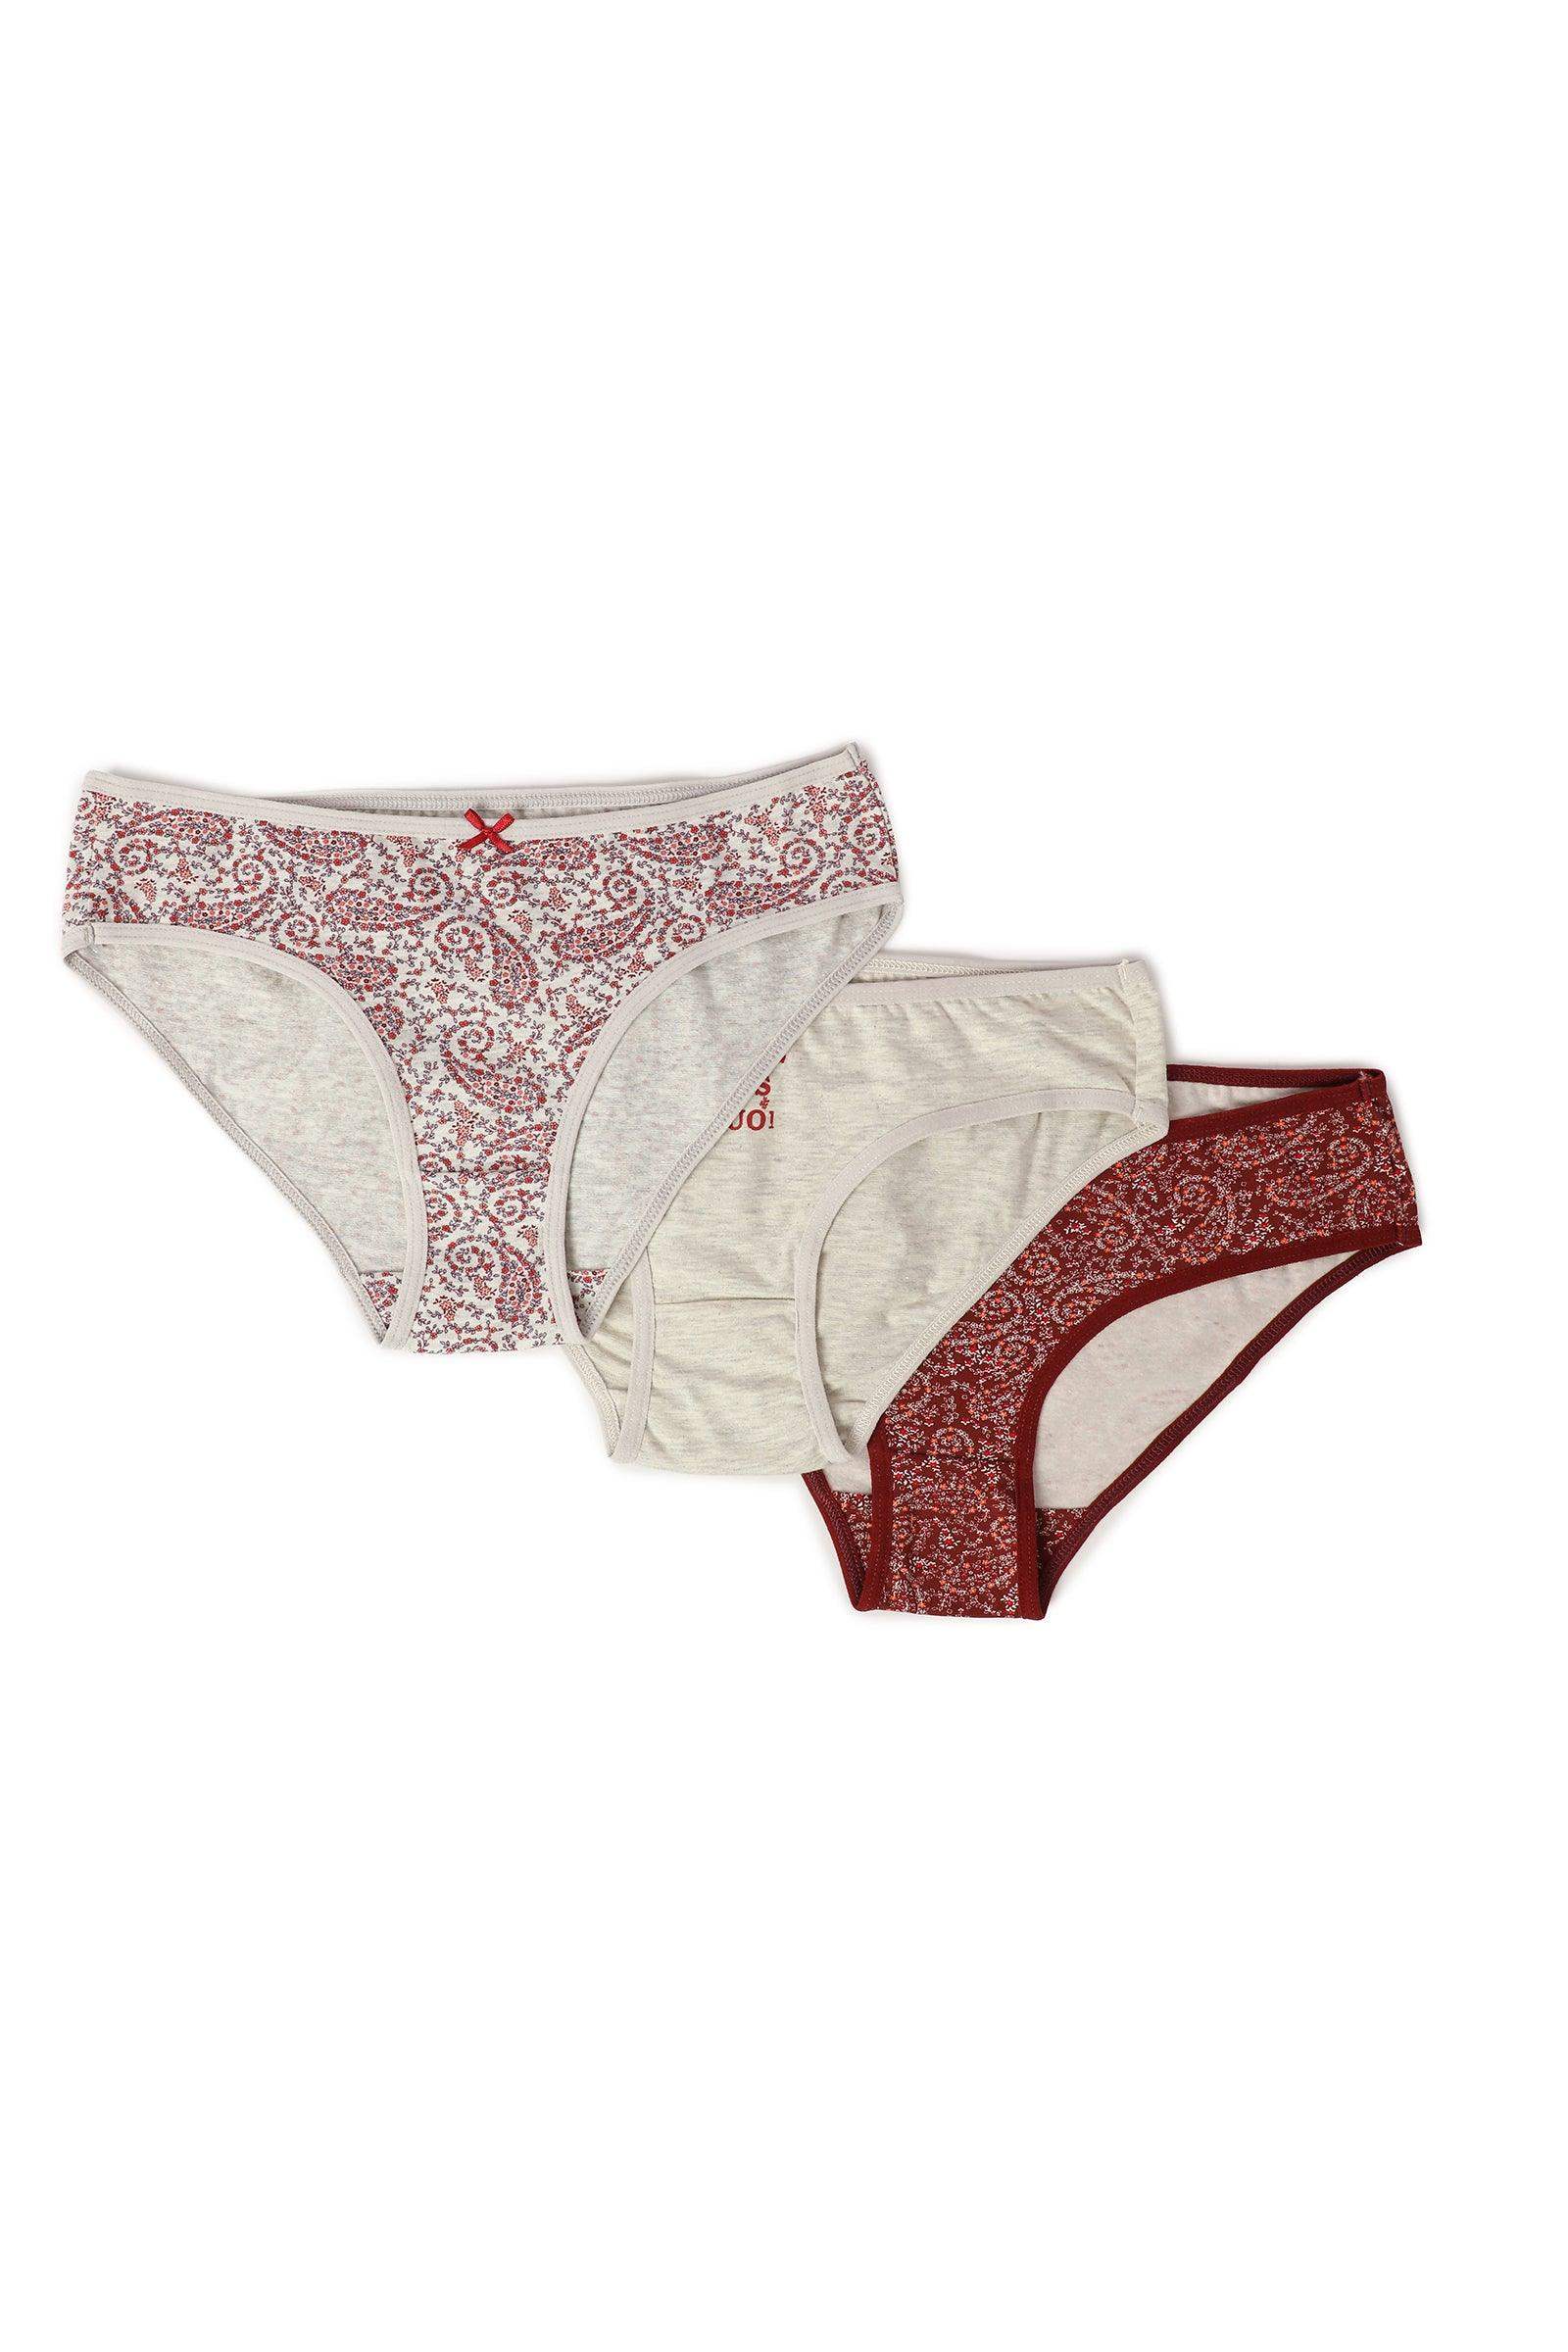 Pack of 3 Cotton Bikini Panties - Carina - كارينا